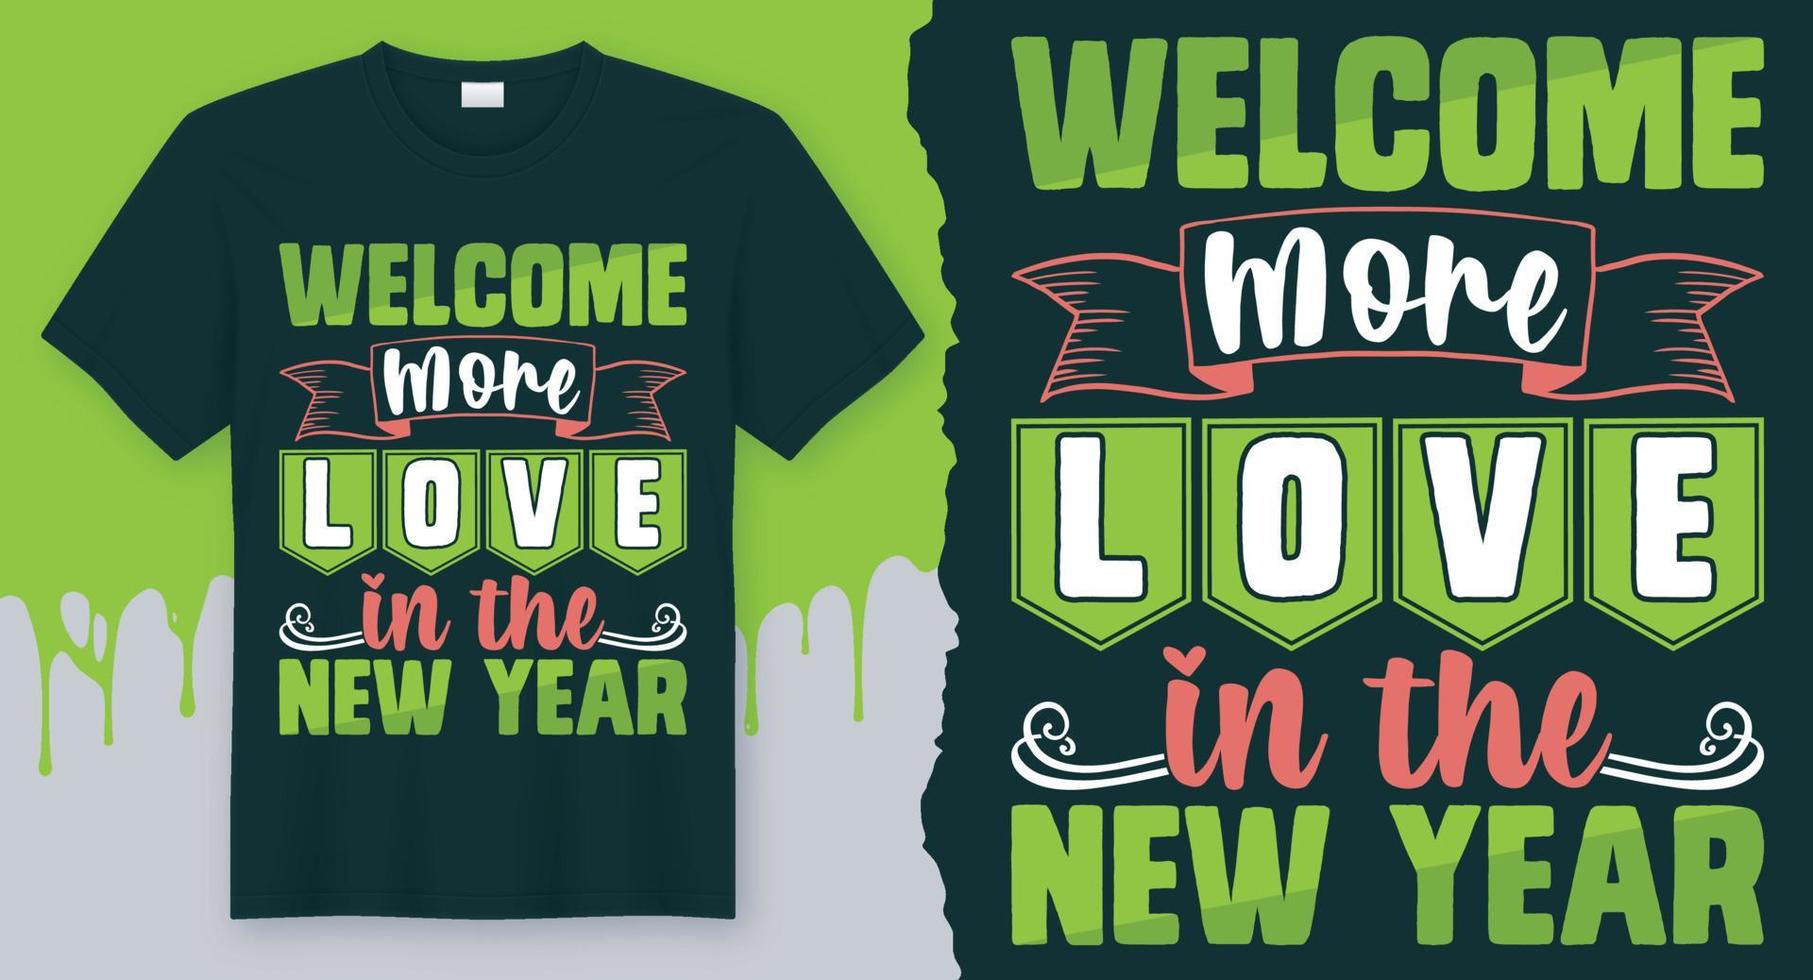 Willkommen mehr Liebe im neuen Jahr. bestes Neujahrsdesign für Geschenkkarten, Banner, Vektoren, T-Shirts, Poster, Druck usw vektor